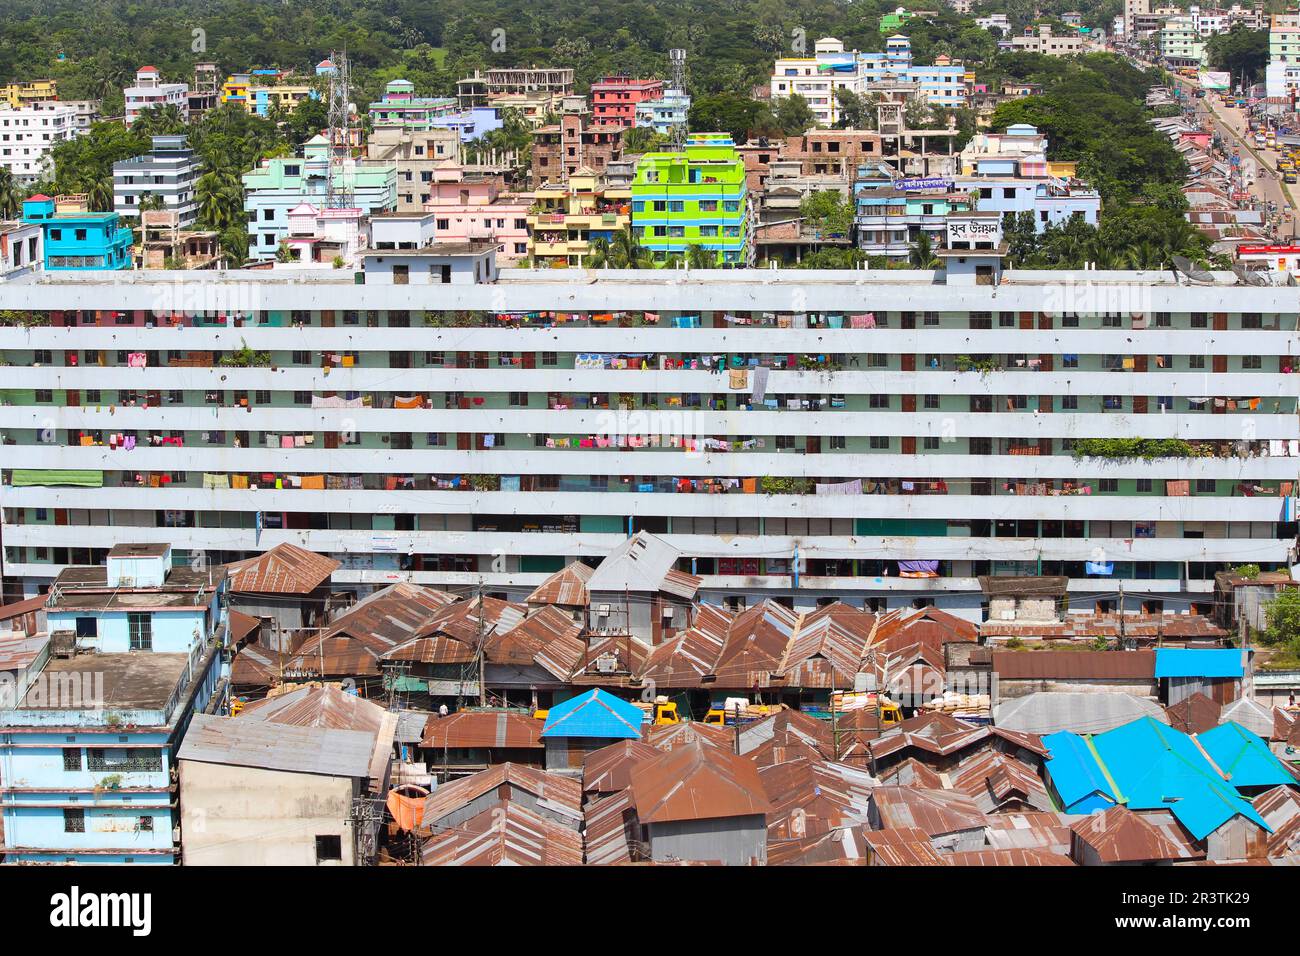 Urbanisierung. Chowmuhani, Noakhali, Bangladesch aus der Vogelperspektive. Eine andere Lebensperspektive. Diskriminierung in den Städten. Stockfoto